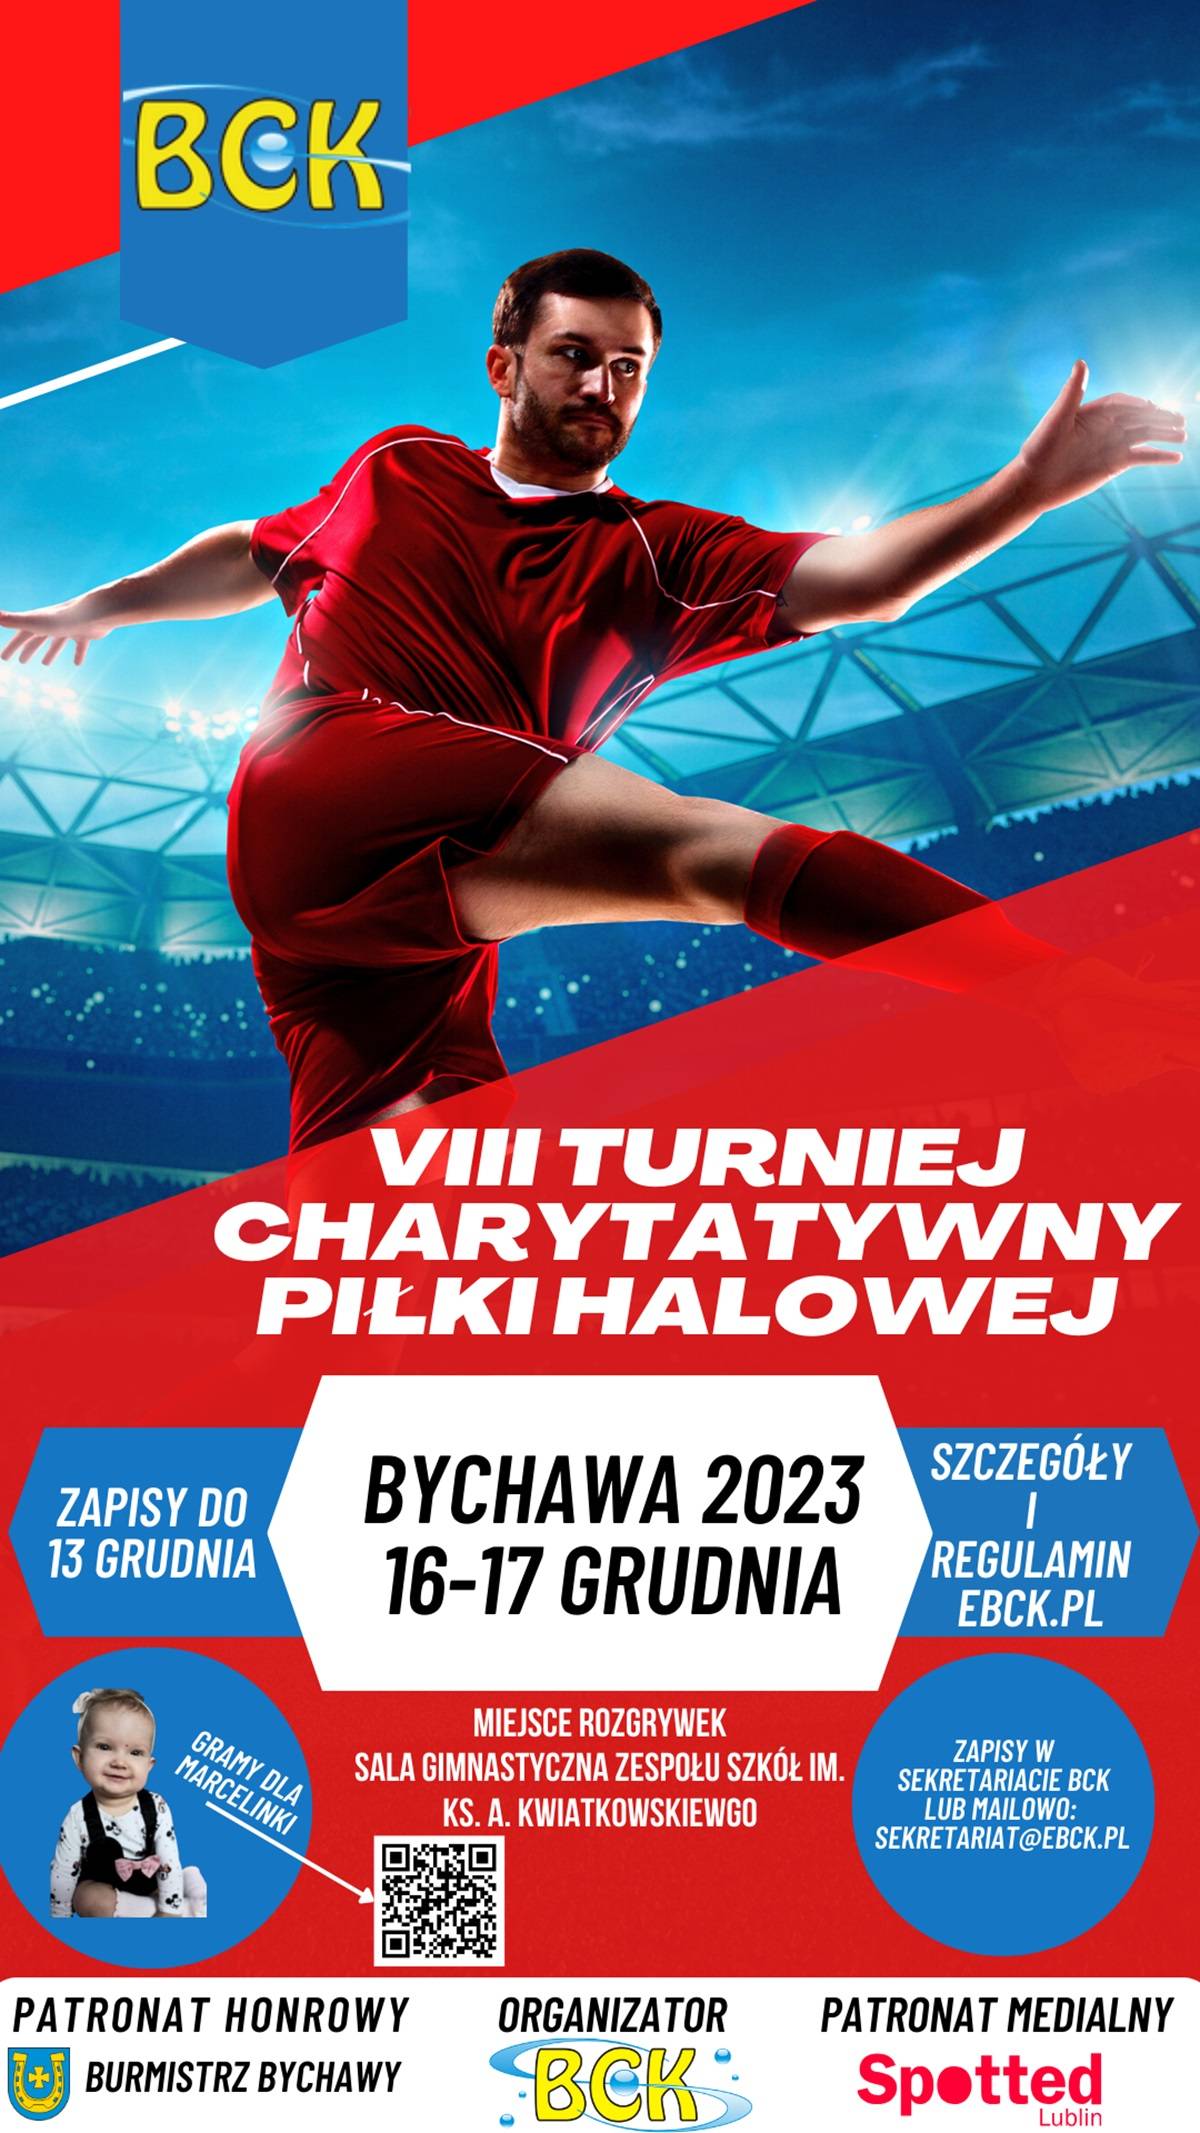 Charytatywny turniej piłki halowej w Bychawie - plakat